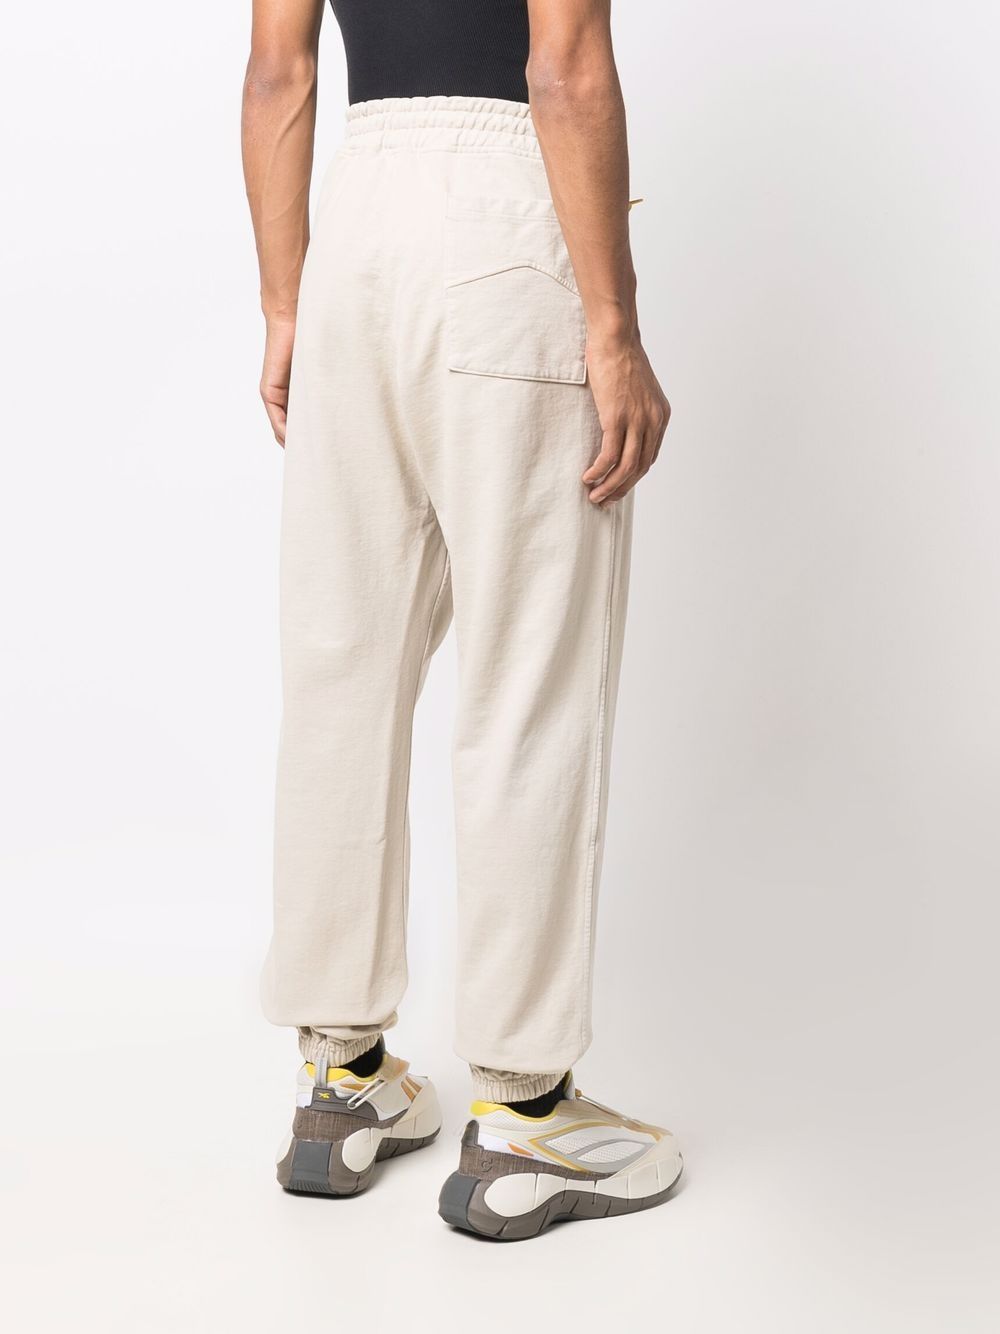 фото Rhude домашние брюки с вышитым логотипом